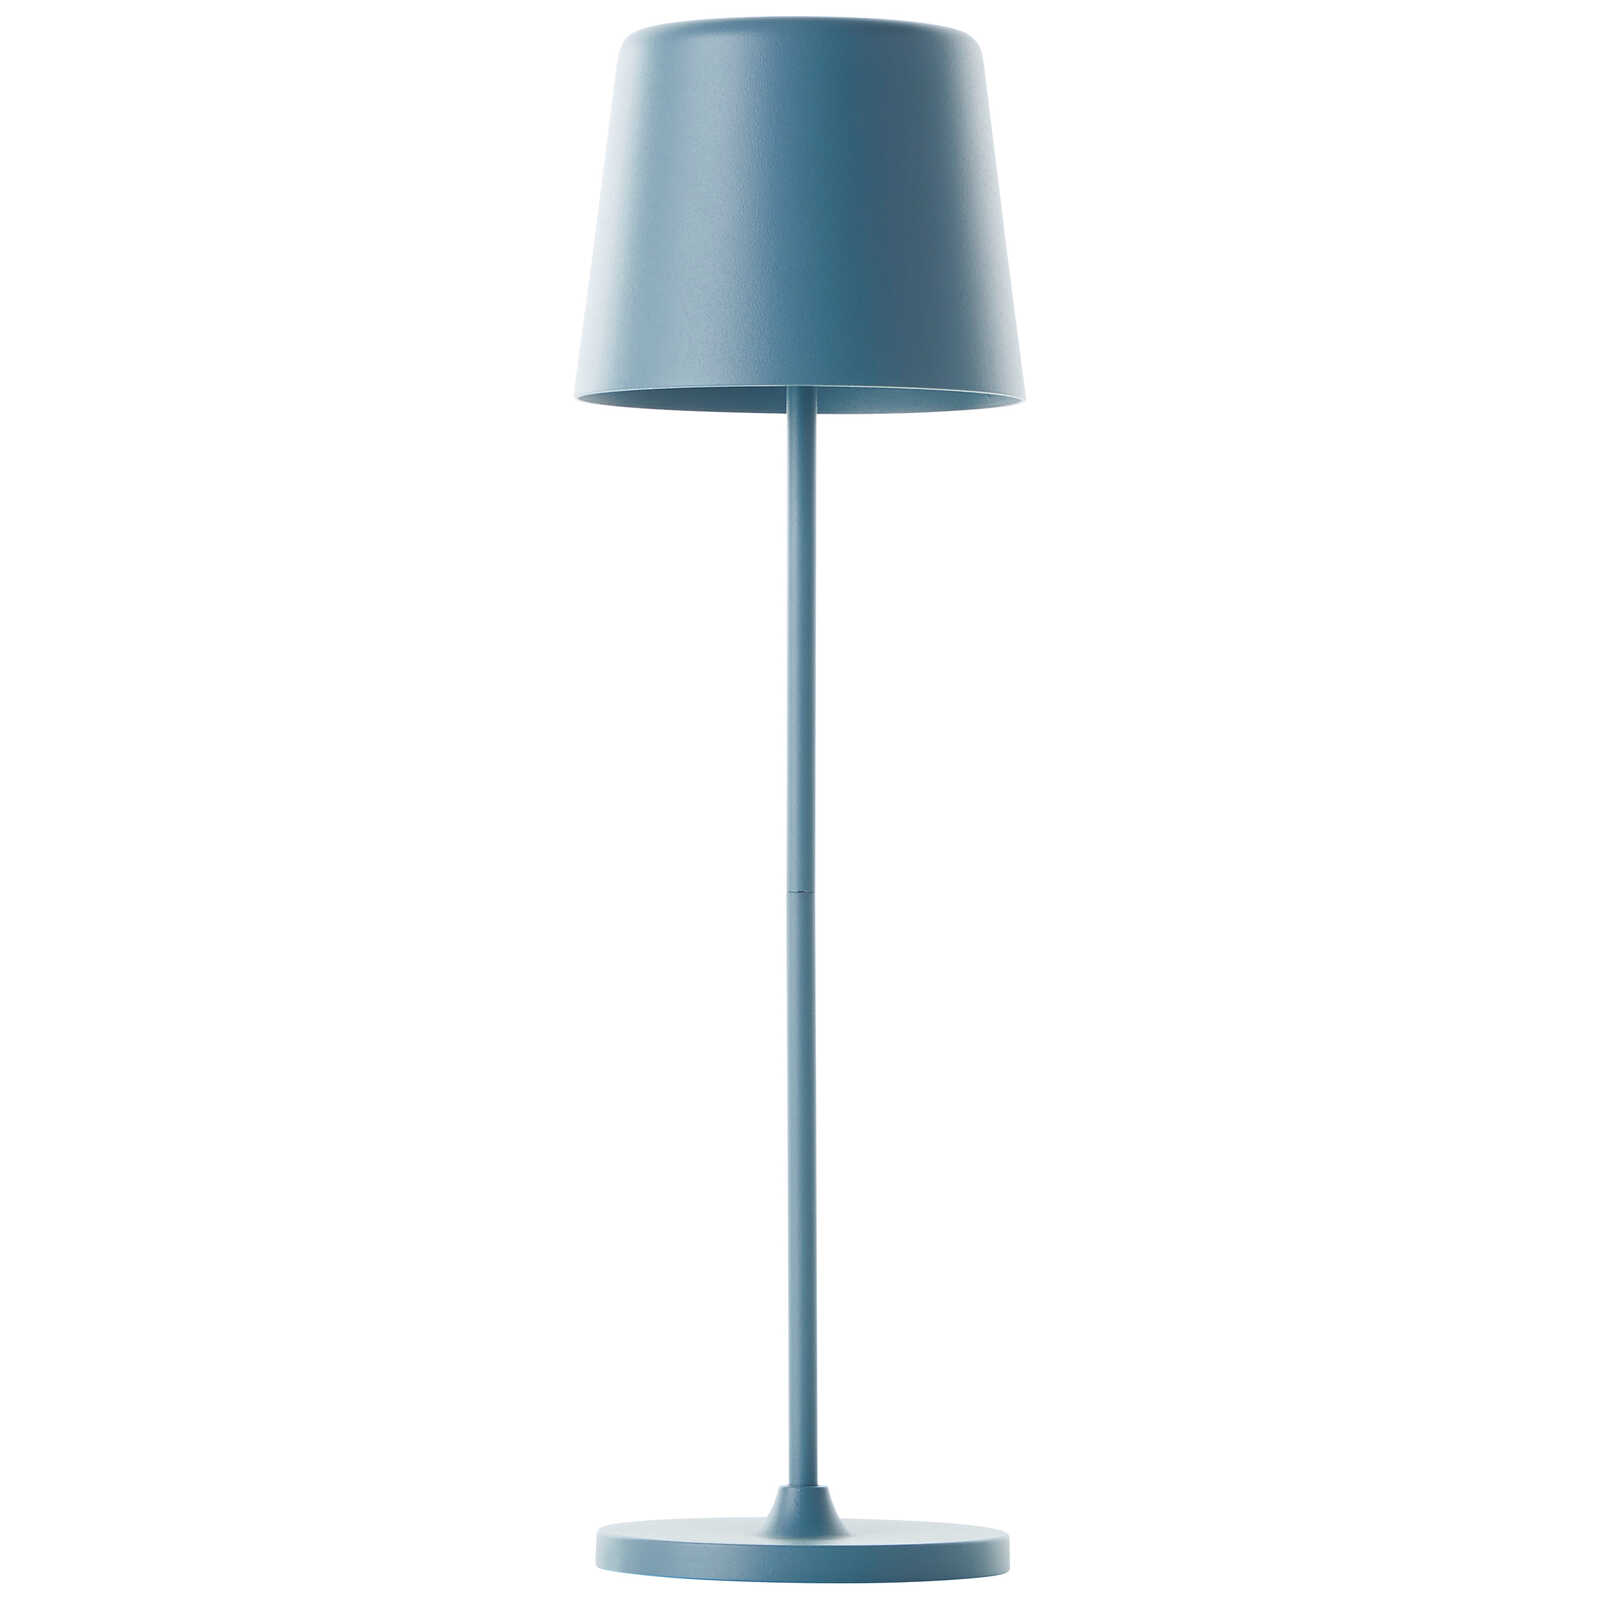             Lampe de table en métal - Cosy 1 - Bleu
        